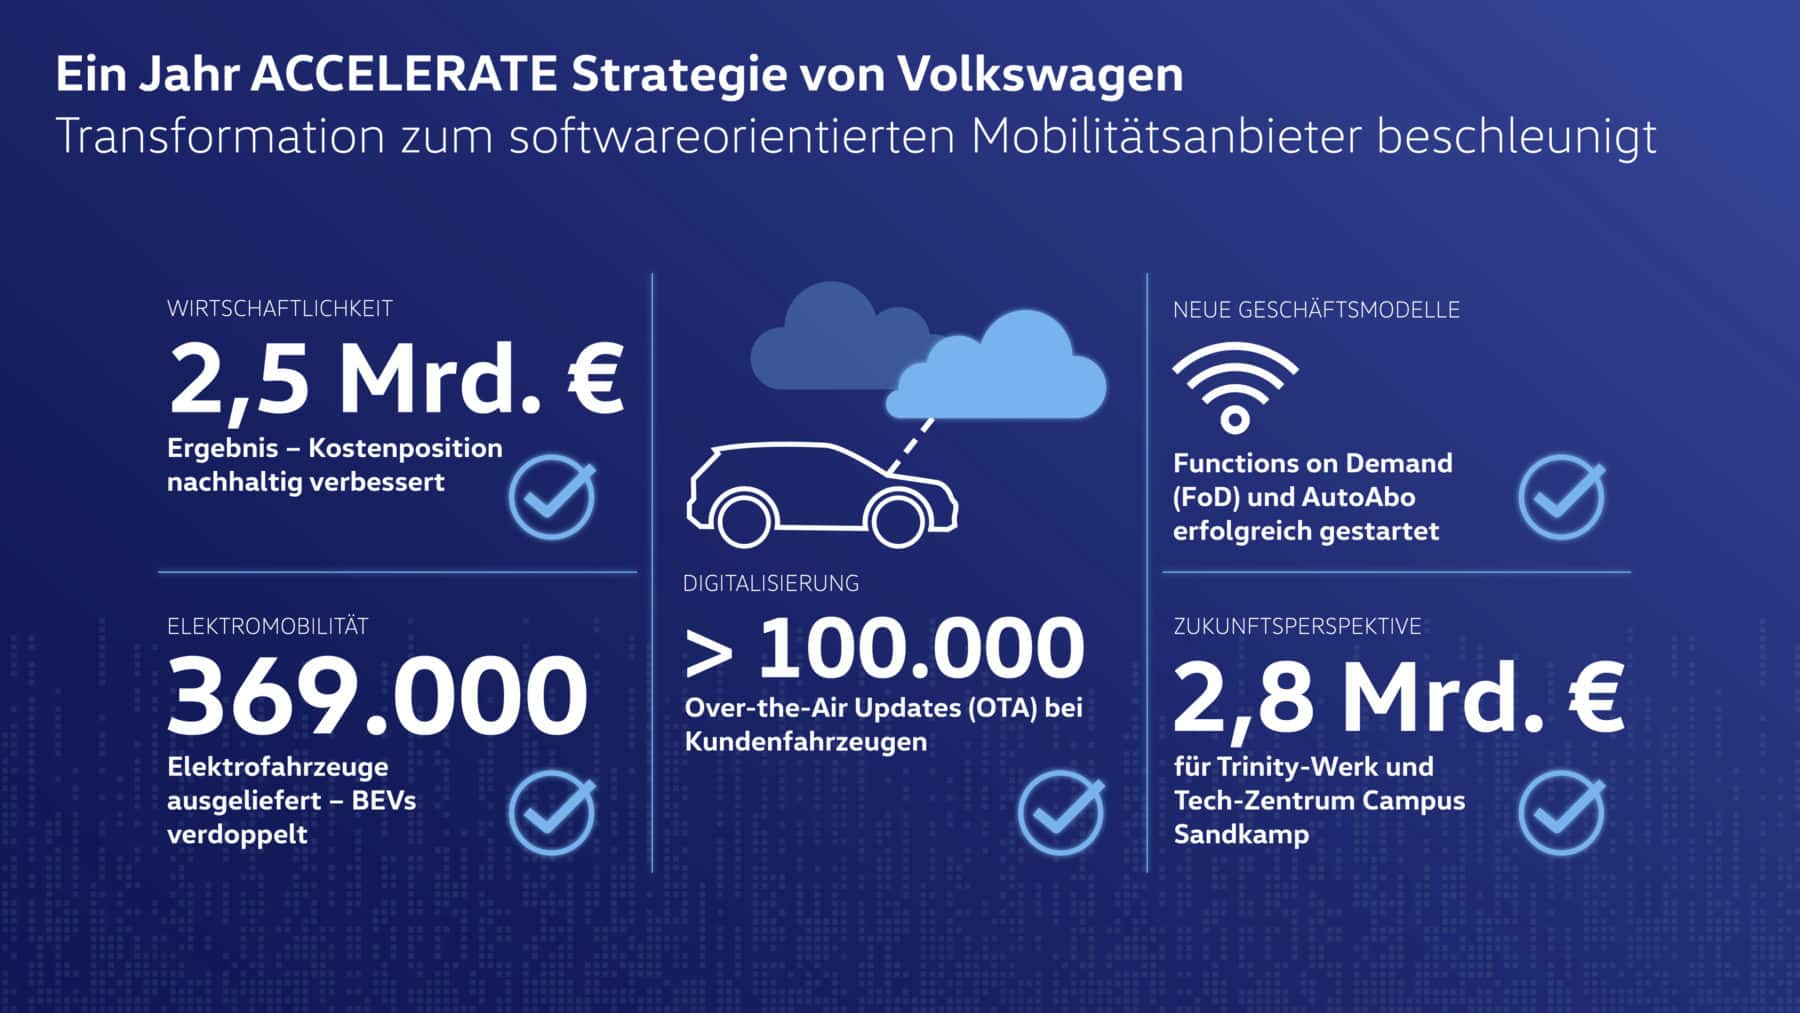 VW: Ein Jahr ACCELERATE Strategie